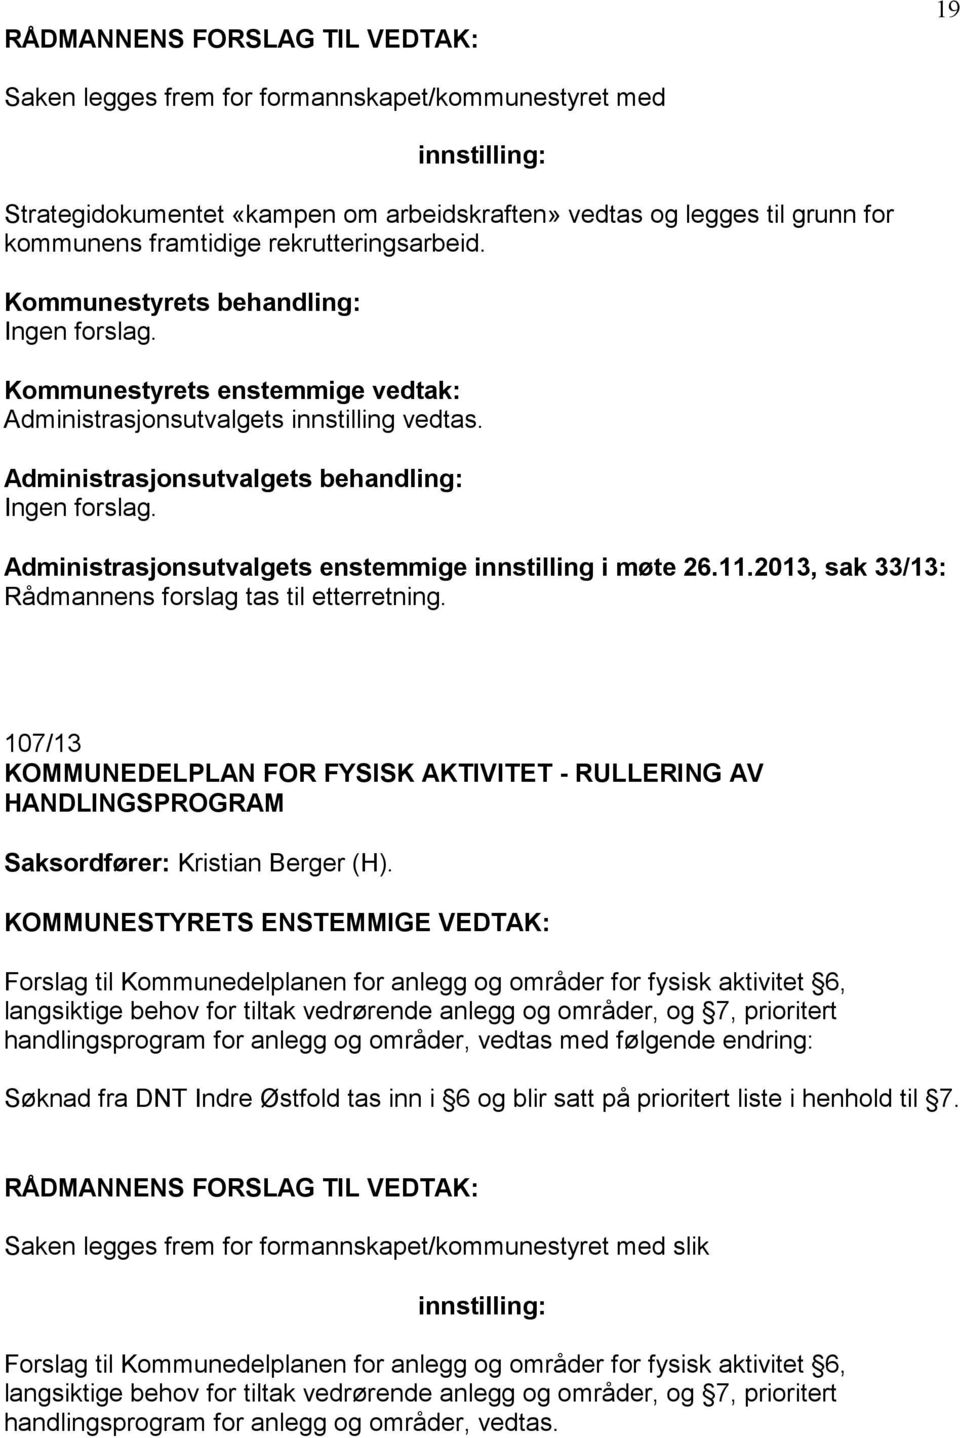 107/13 KOMMUNEDELPLAN FOR FYSISK AKTIVITET - RULLERING AV HANDLINGSPROGRAM Saksordfører: Kristian Berger (H).